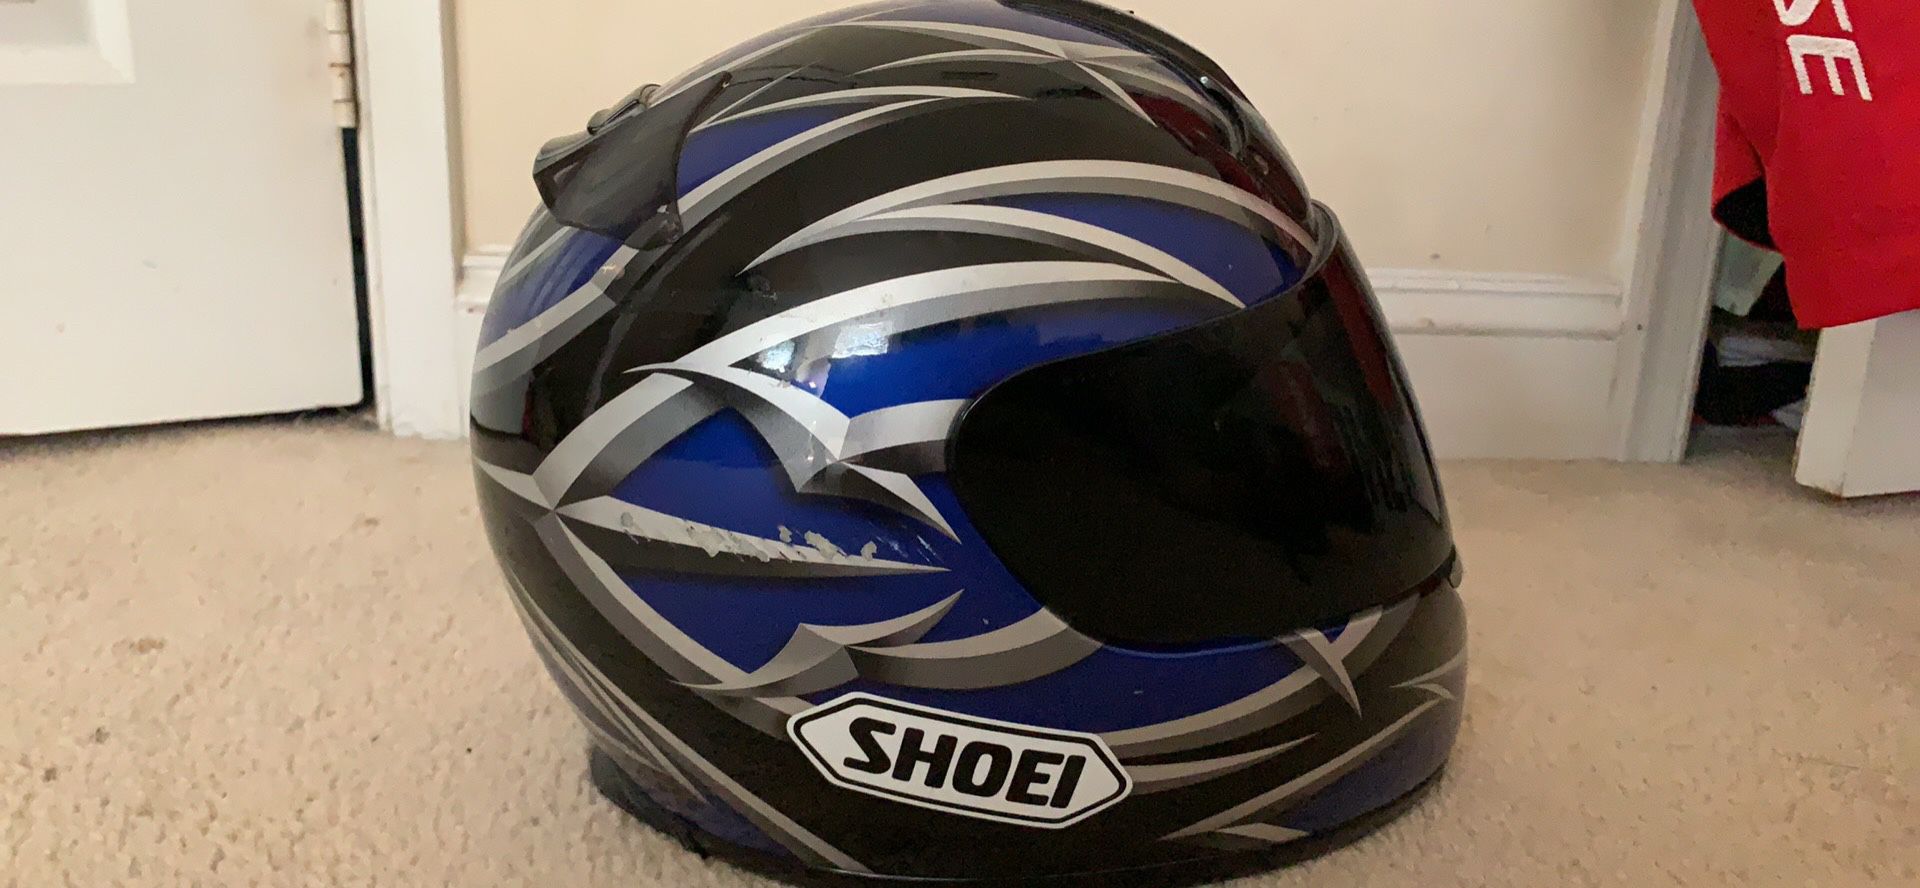 Shoei helmet size L